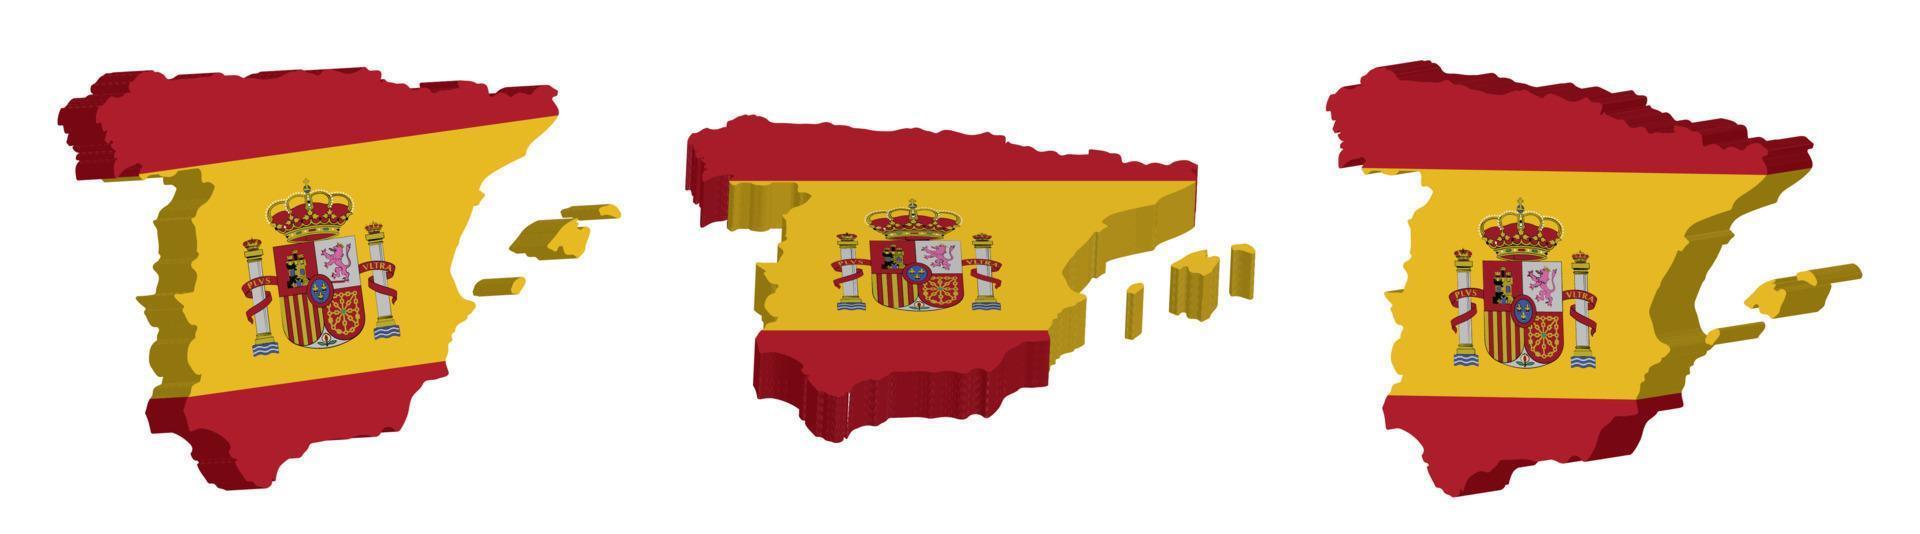 realista 3d mapa do Espanha vetor Projeto modelo